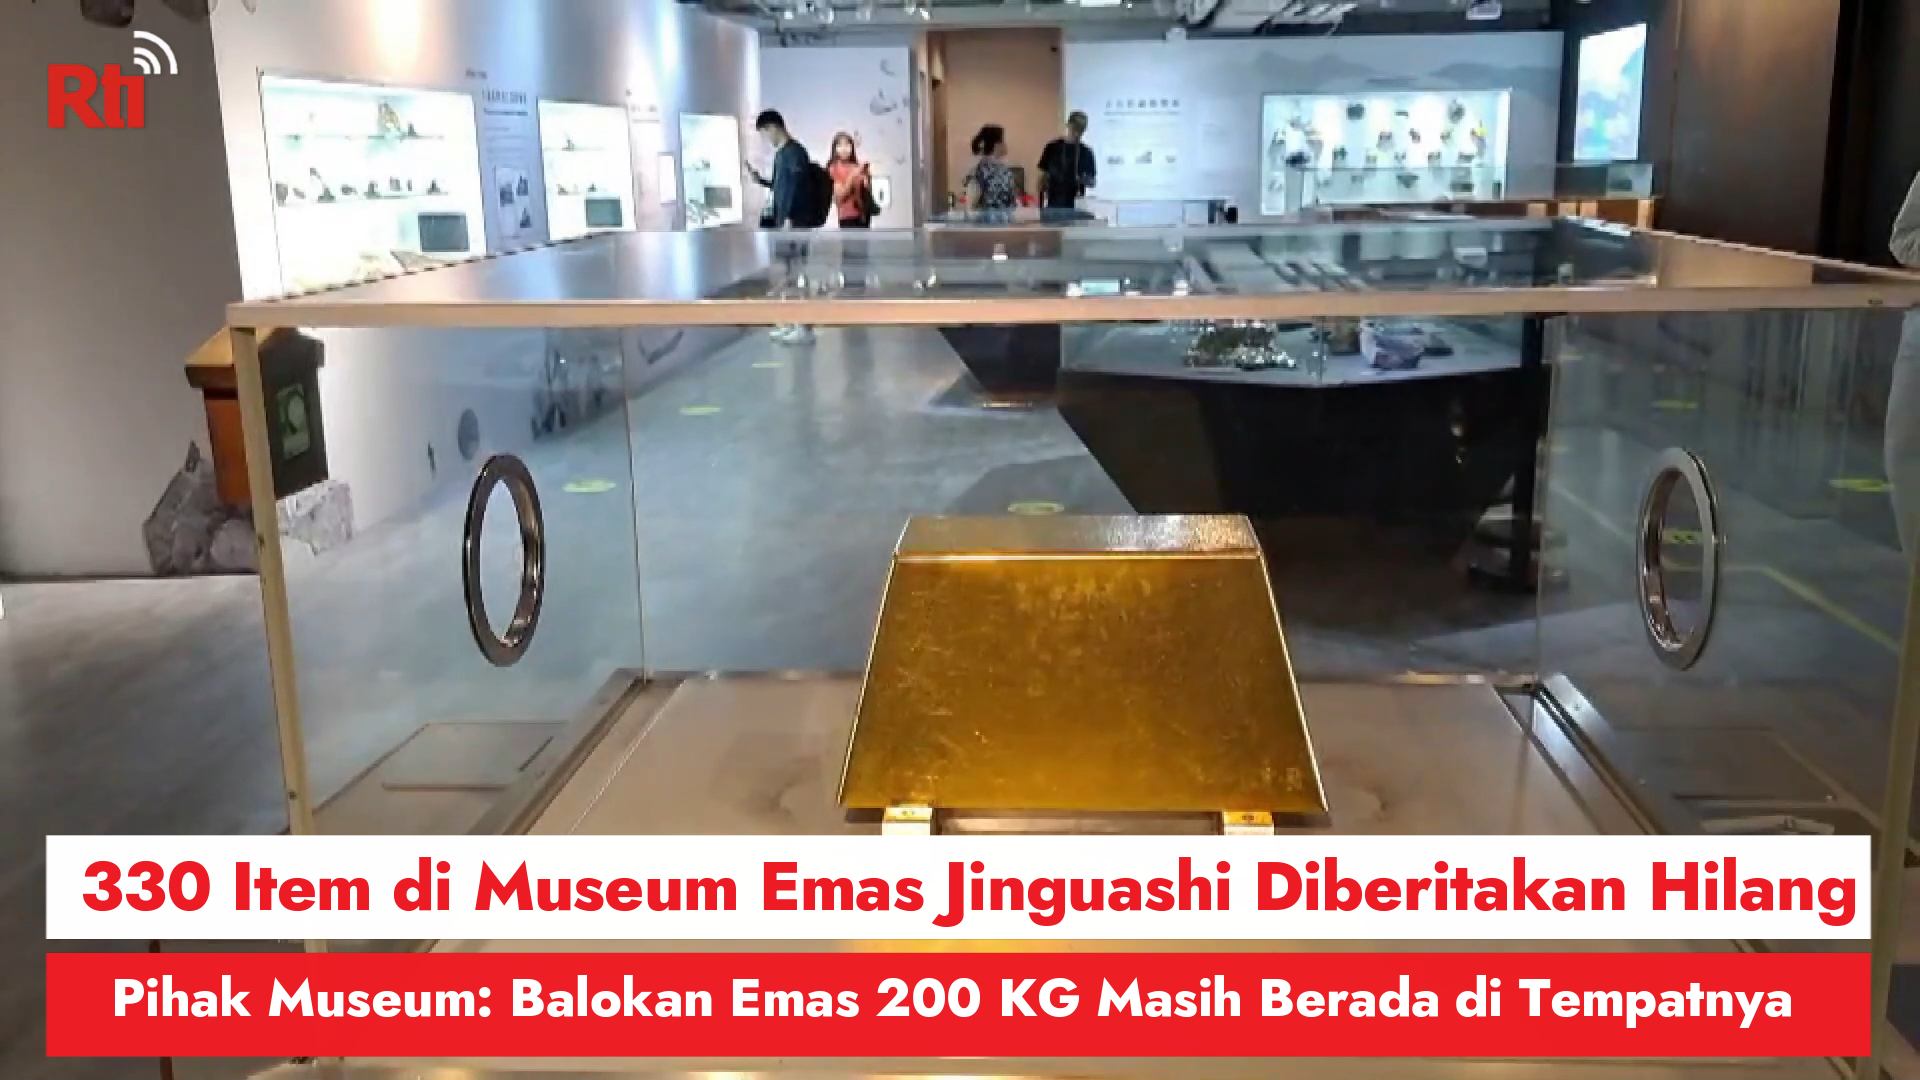 330 Item di Museum Emas Jinguashi Diberitakan Hilang, Pihak Museum: Balokan Emas 200 KG Masih Berada di Tempatnya